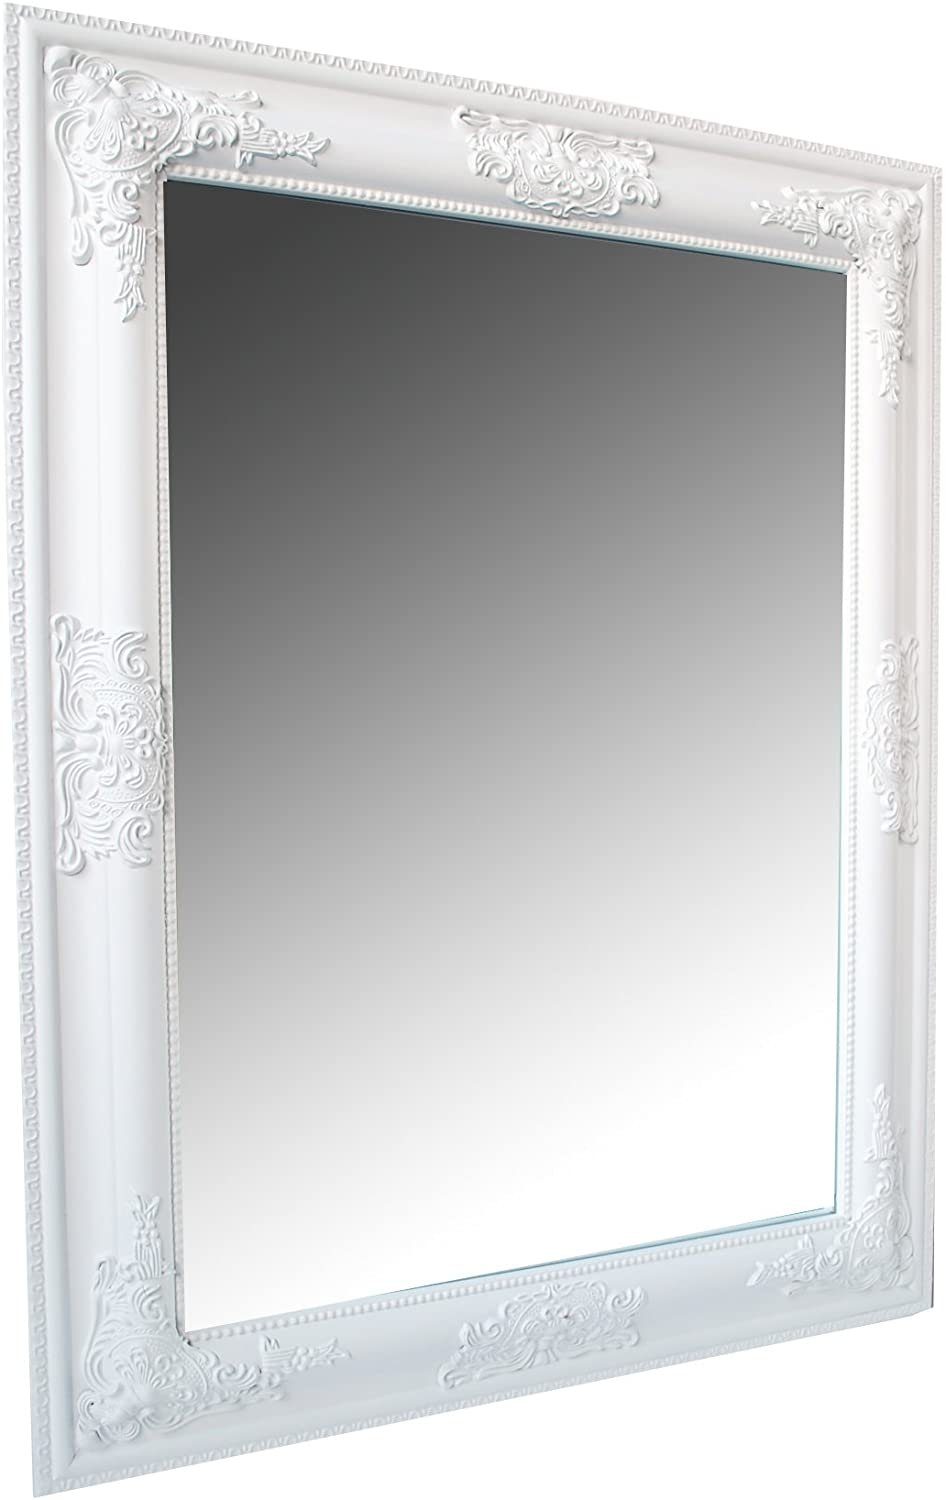 möbelando Barockspiegel Leila, Traumhafter Дзеркало in weiß mit wunderschönen Verzierungen. Breite 65 cm, Höhe 50 cm, Tiefe 3 cm. Holzrahmenbreite ca. 7 cm.